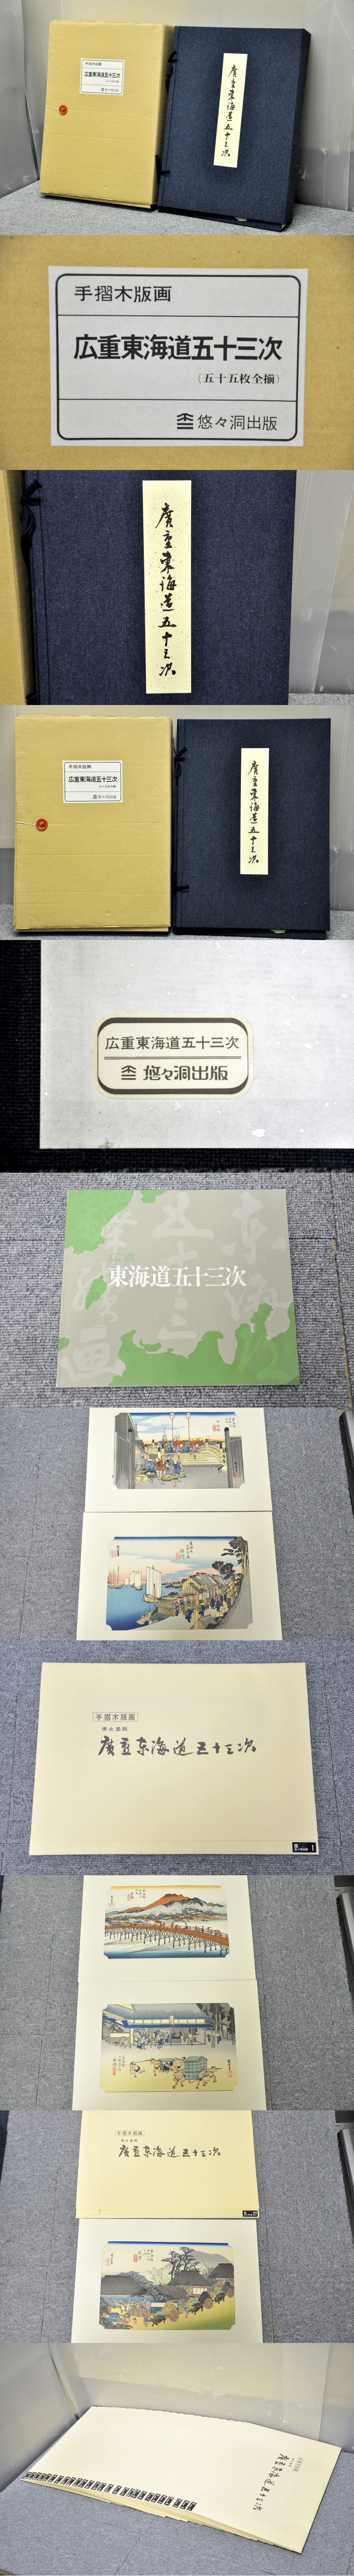 悠々洞出版 手摺木版画 広重東海道五十三次 買取の総合リサイクル